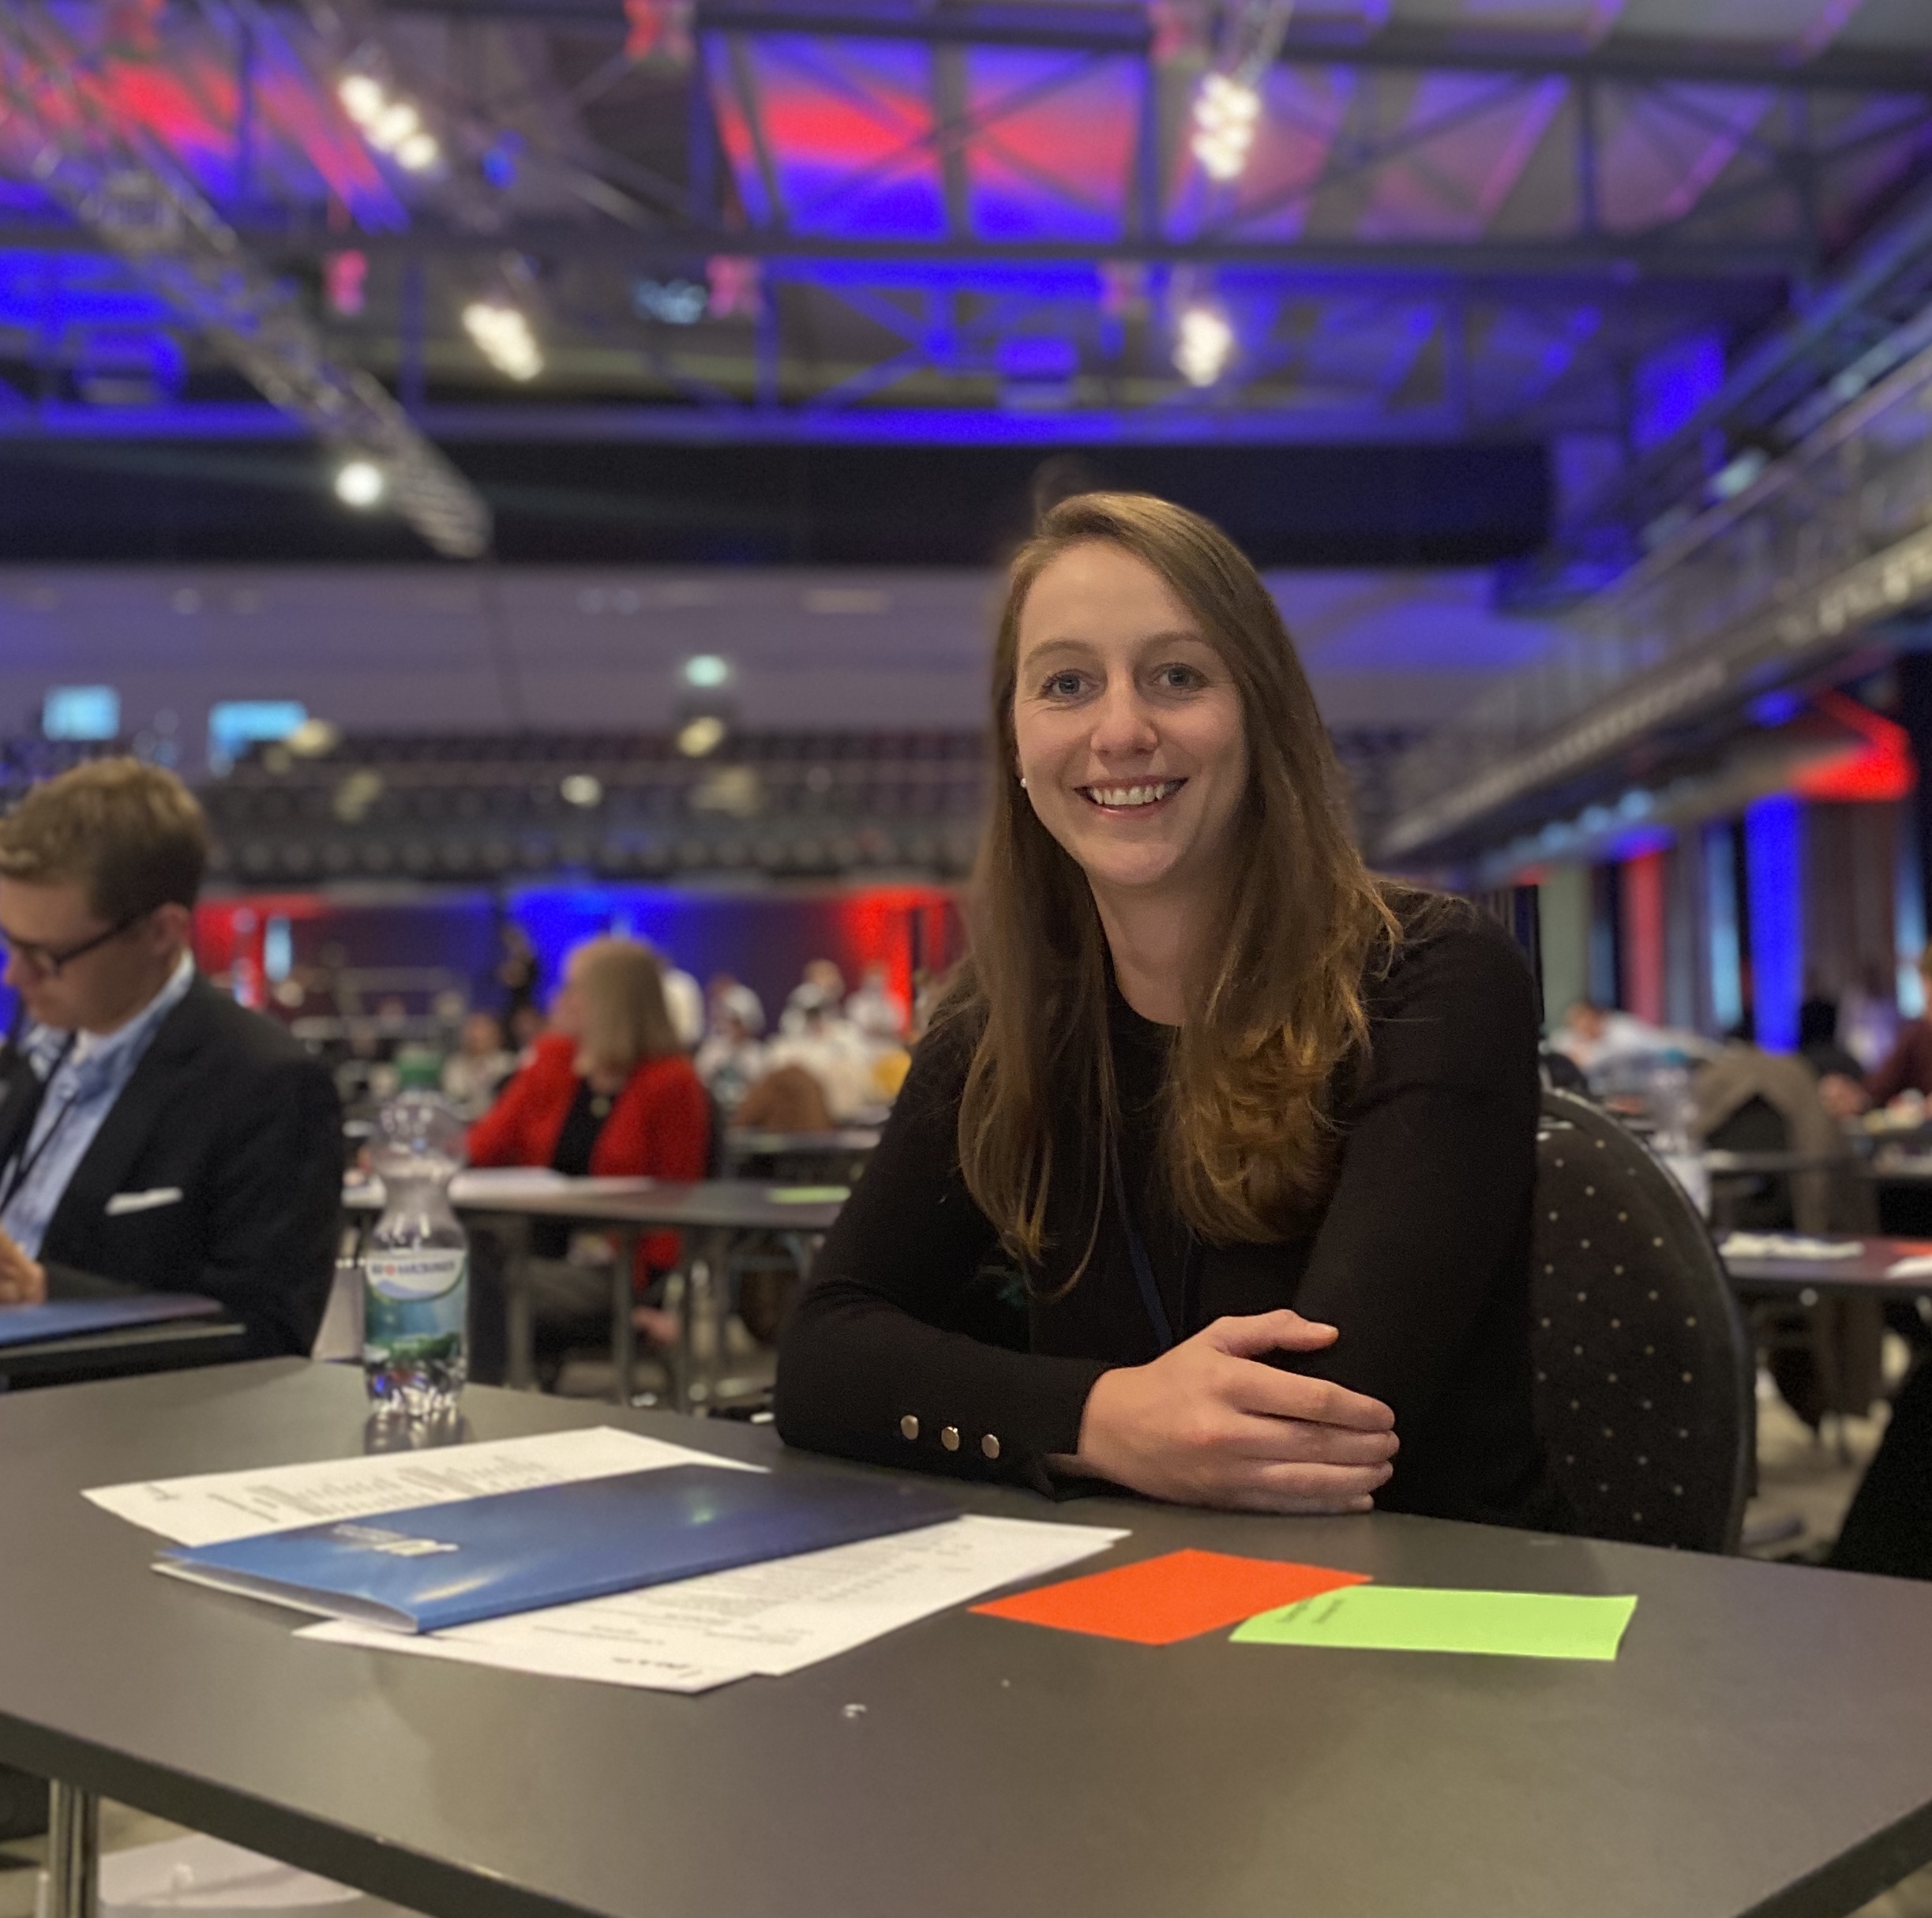 Sophie Ramdor zur stellvertretenden Landesvorsitzenden der JU Niedersachsen gewählt; Bild: Junge Union Landesverband Braunschweig